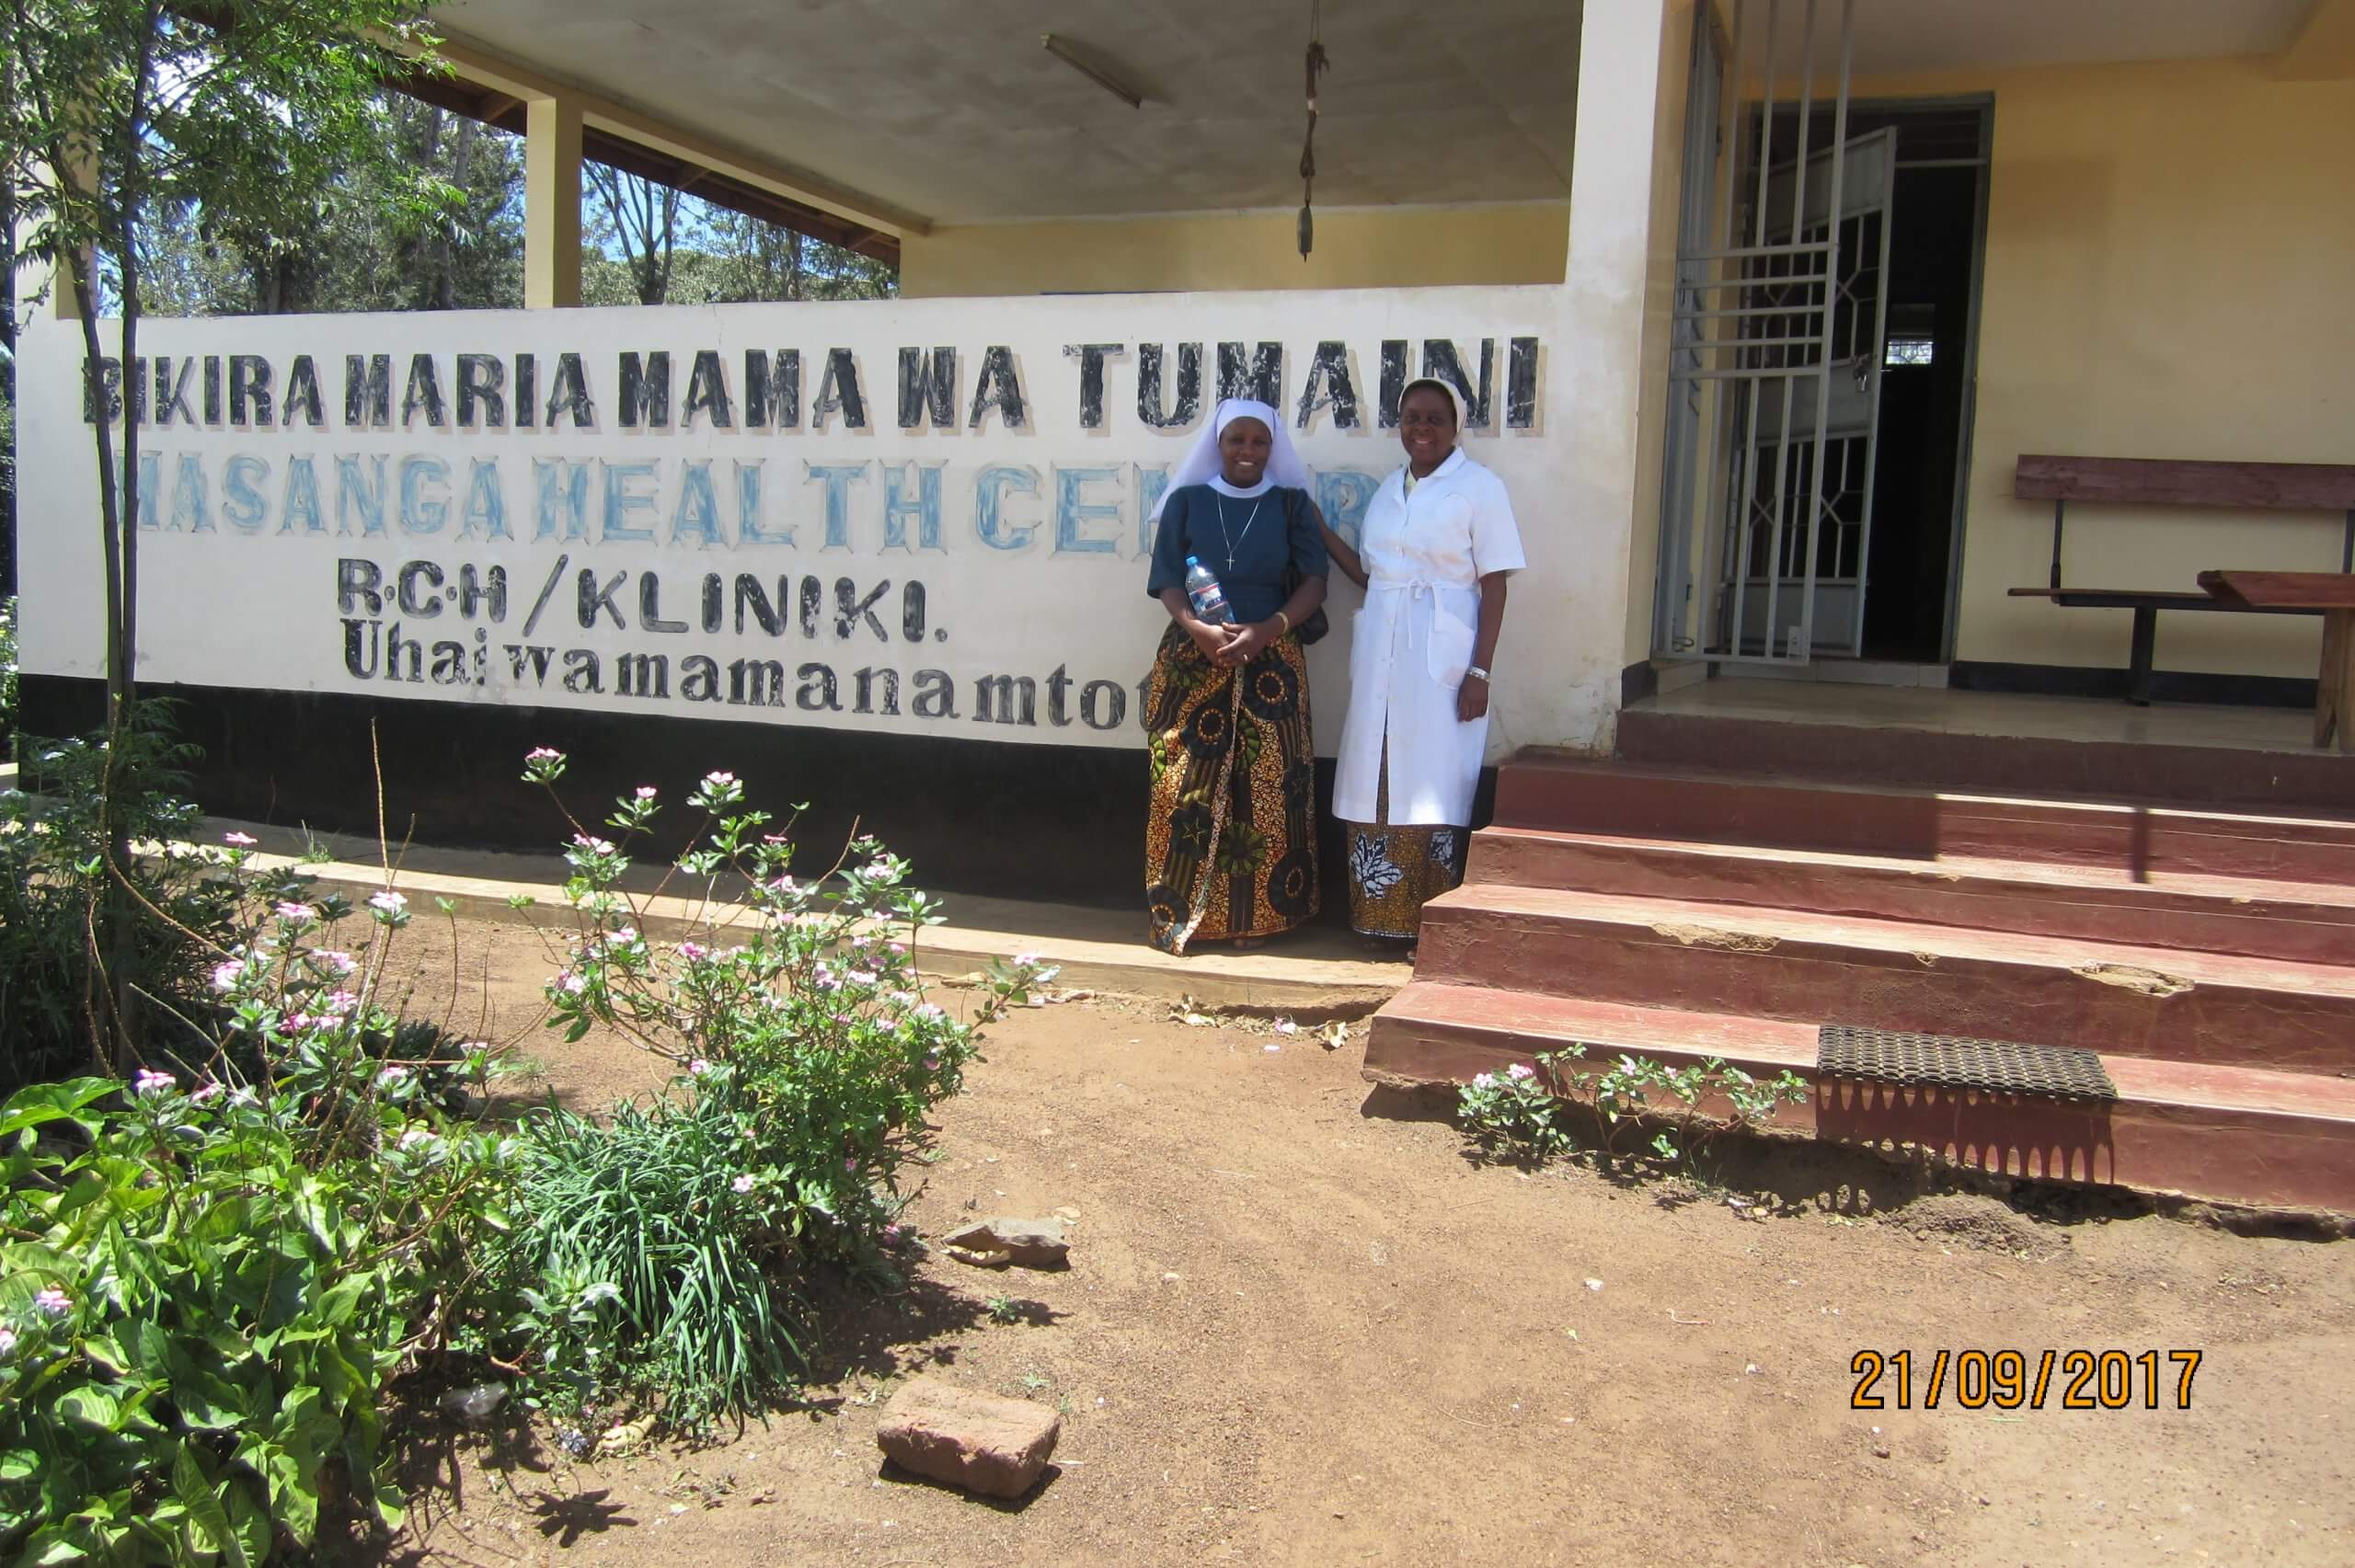 Bikira Maria Mama Wa Tumaini Health Centre, Masanga